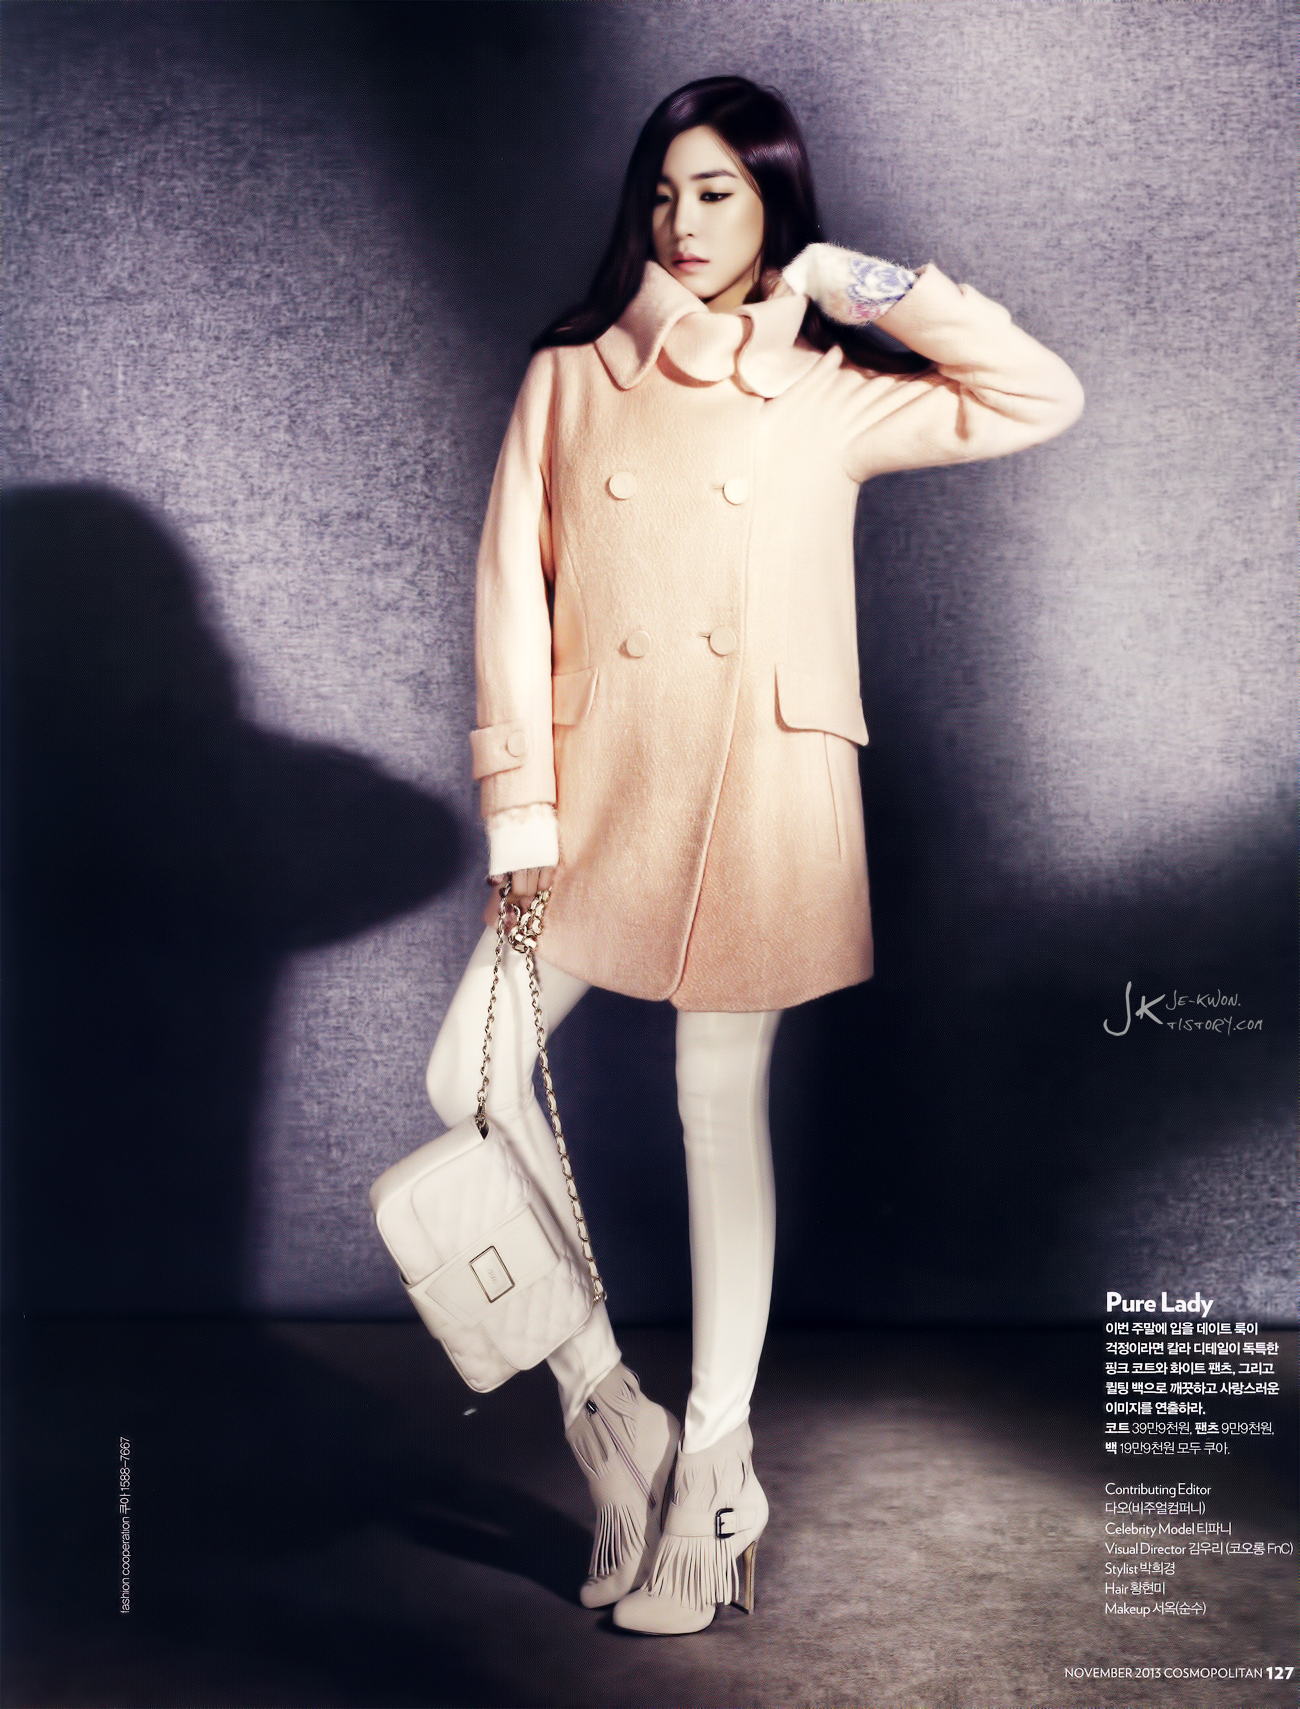 [PIC][20-10-2013]Tiffany xuất hiện trên ấn phẩm tháng 11 của tạp chí "Cosmopolitan" 2619AE3A5264E2C2319703